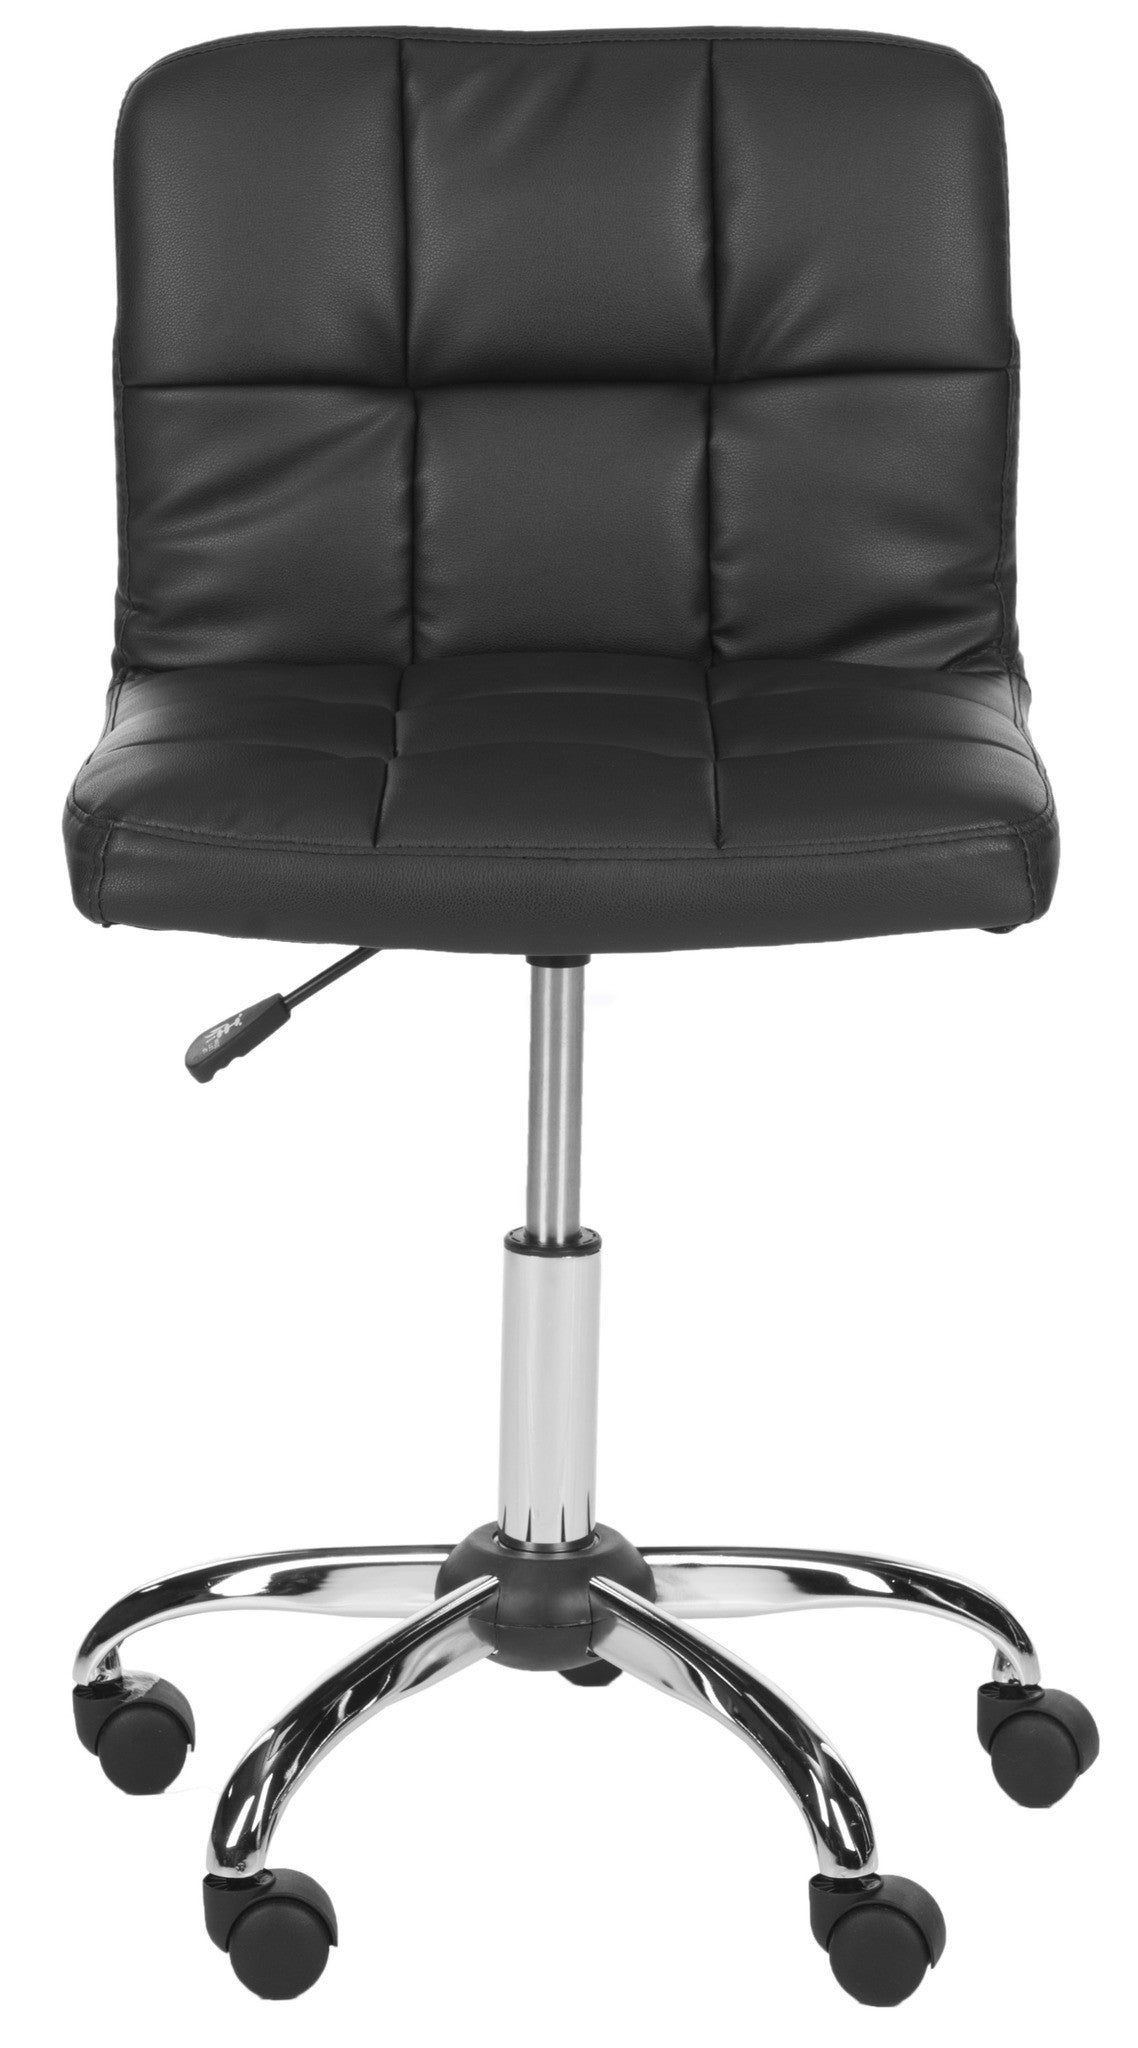 Safavieh Brunner Desk Chair | Office Chairs |  Modishstore  - 5